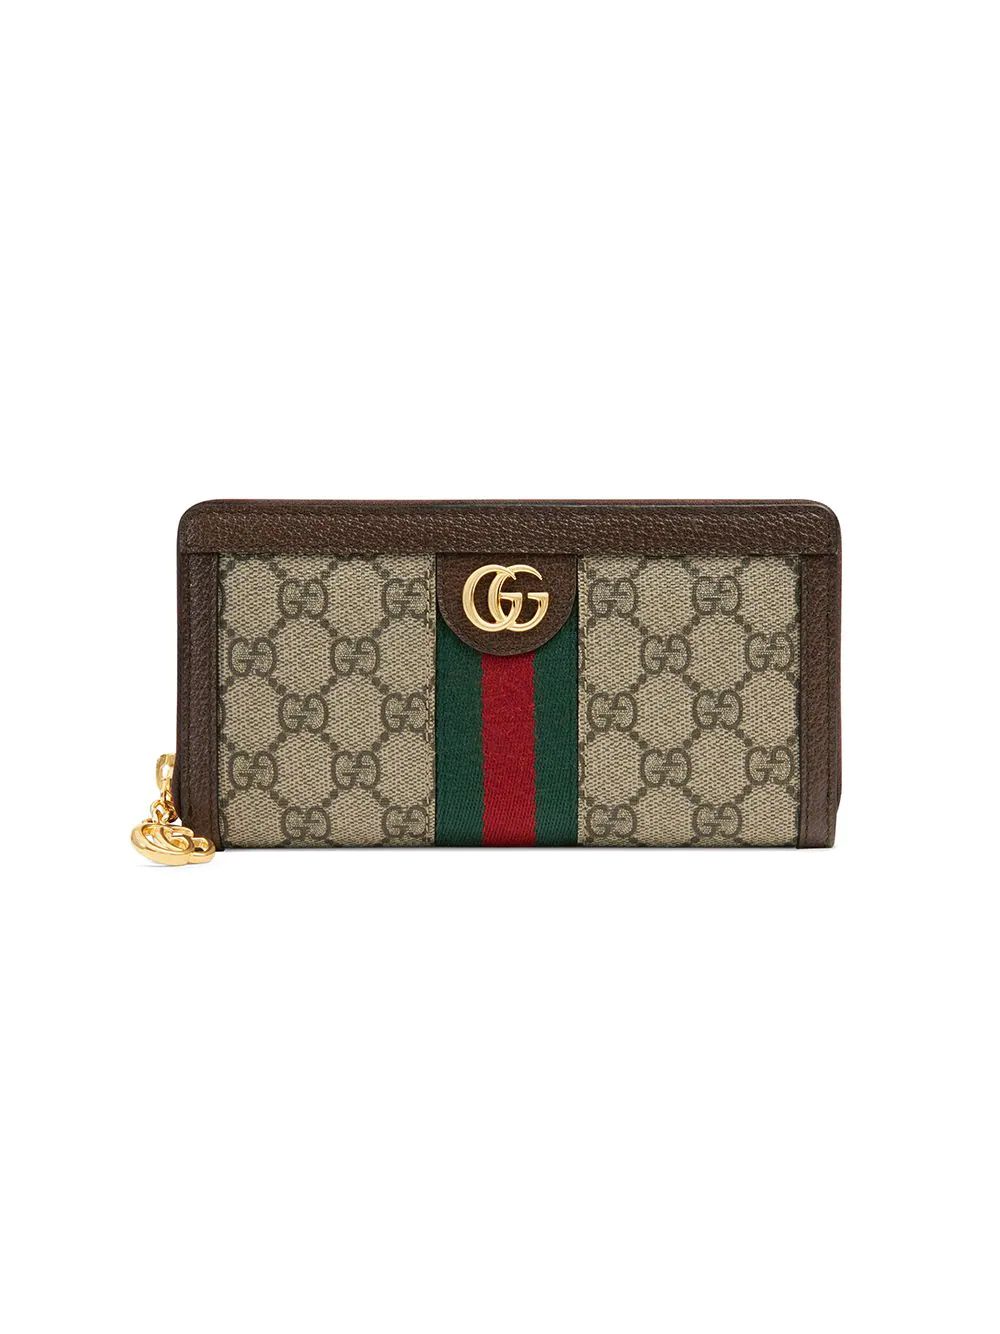 Gucci Ophidia GG zip around wallet - Neutrals | FarFetch US